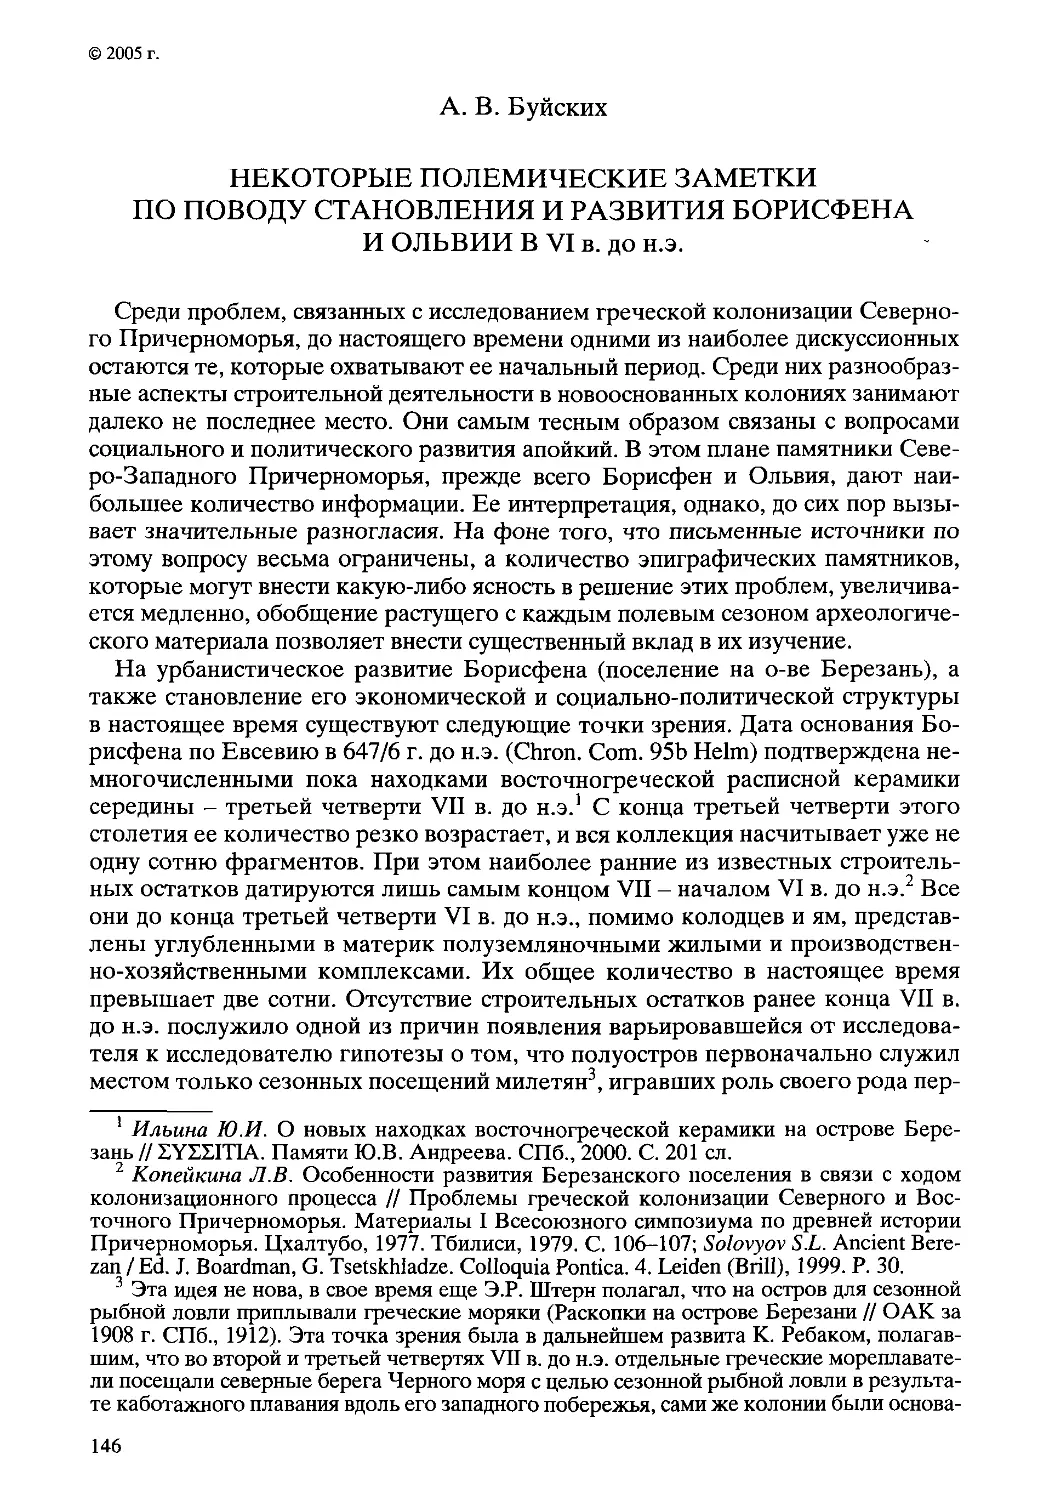 ﻿Некоторые полемические заметки по поводу становления и развития Борисфена и Ольвии в VI в. до н.э. А. В. Буйски